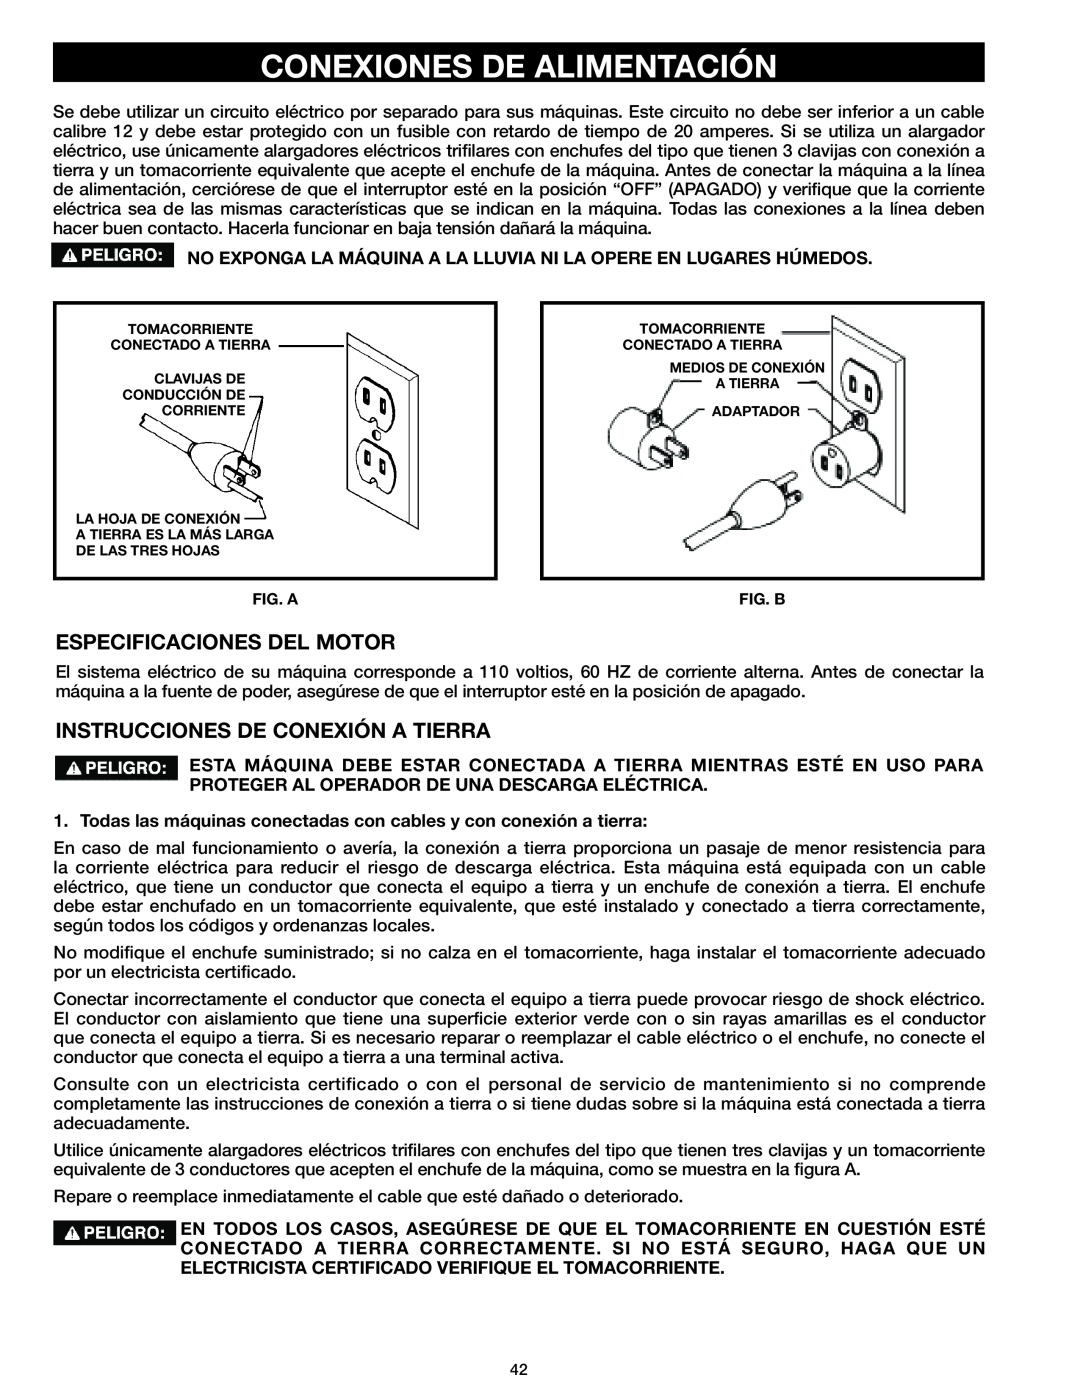 Delta 37-071 instruction manual Conexiones De Alimentación, Especificaciones Del Motor, Instrucciones De Conexión A Tierra 